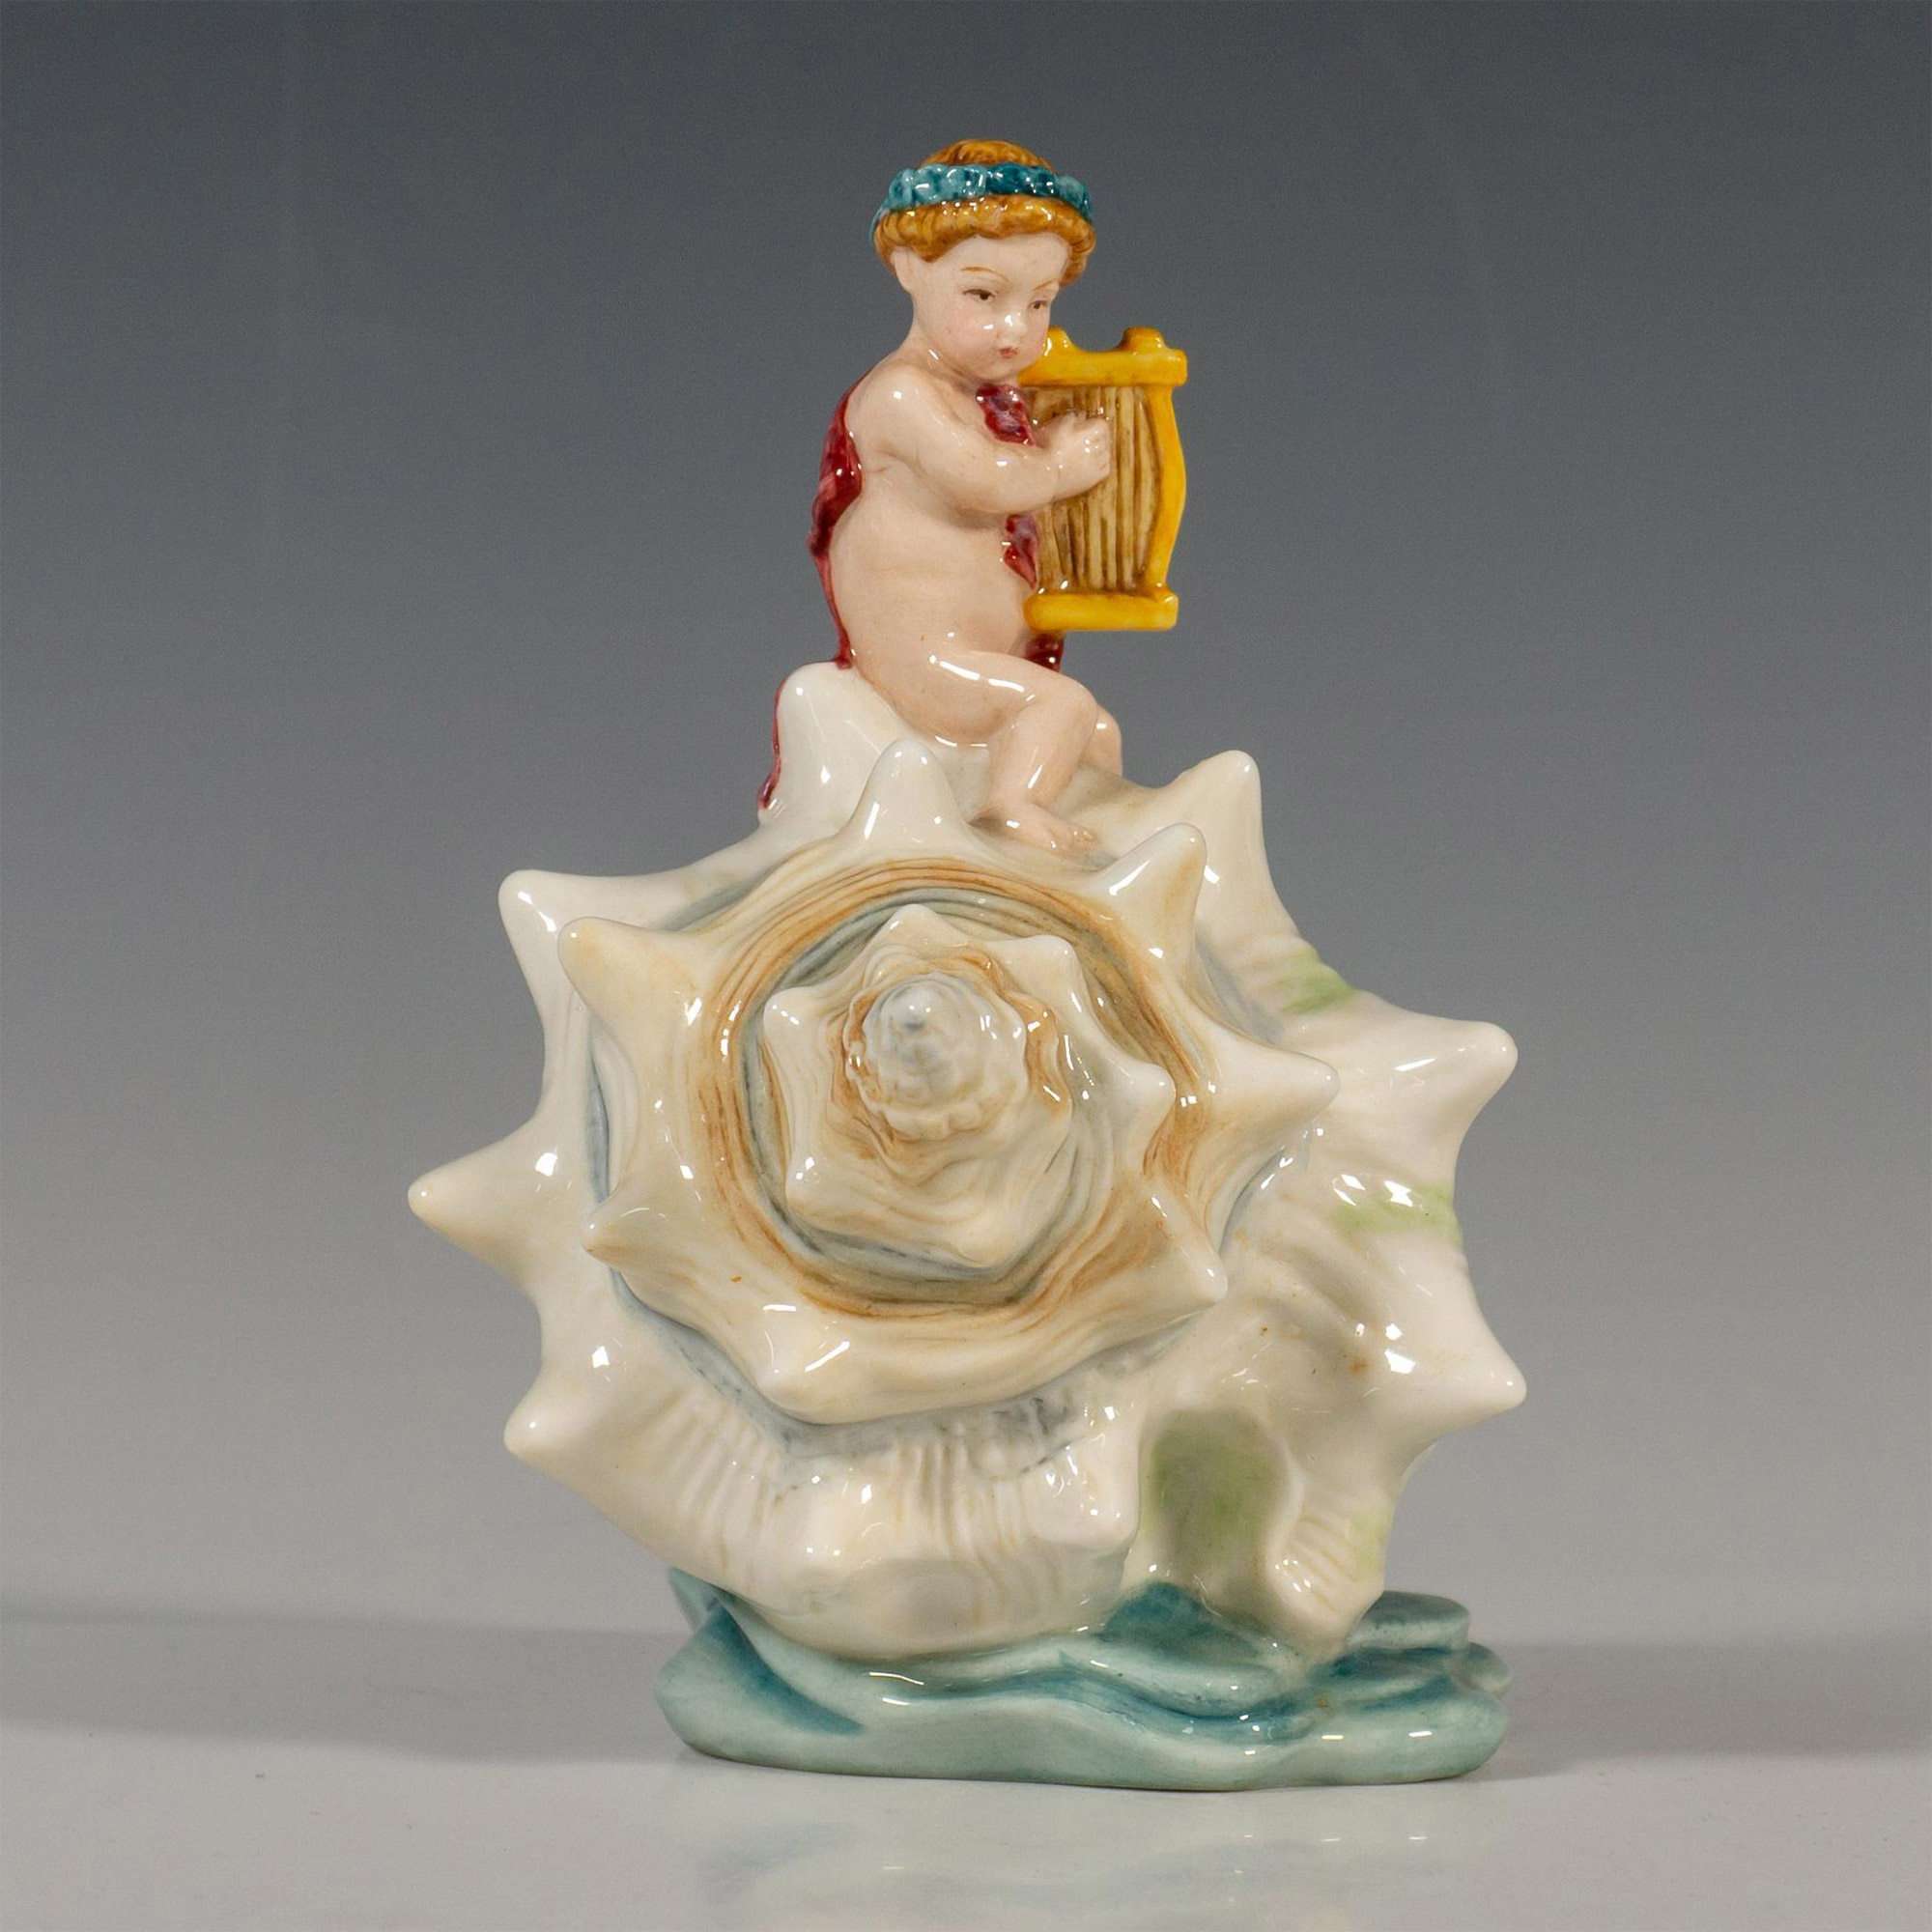 Minton Porcelain Figurine, L'enfant A La Lyre - Image 2 of 5